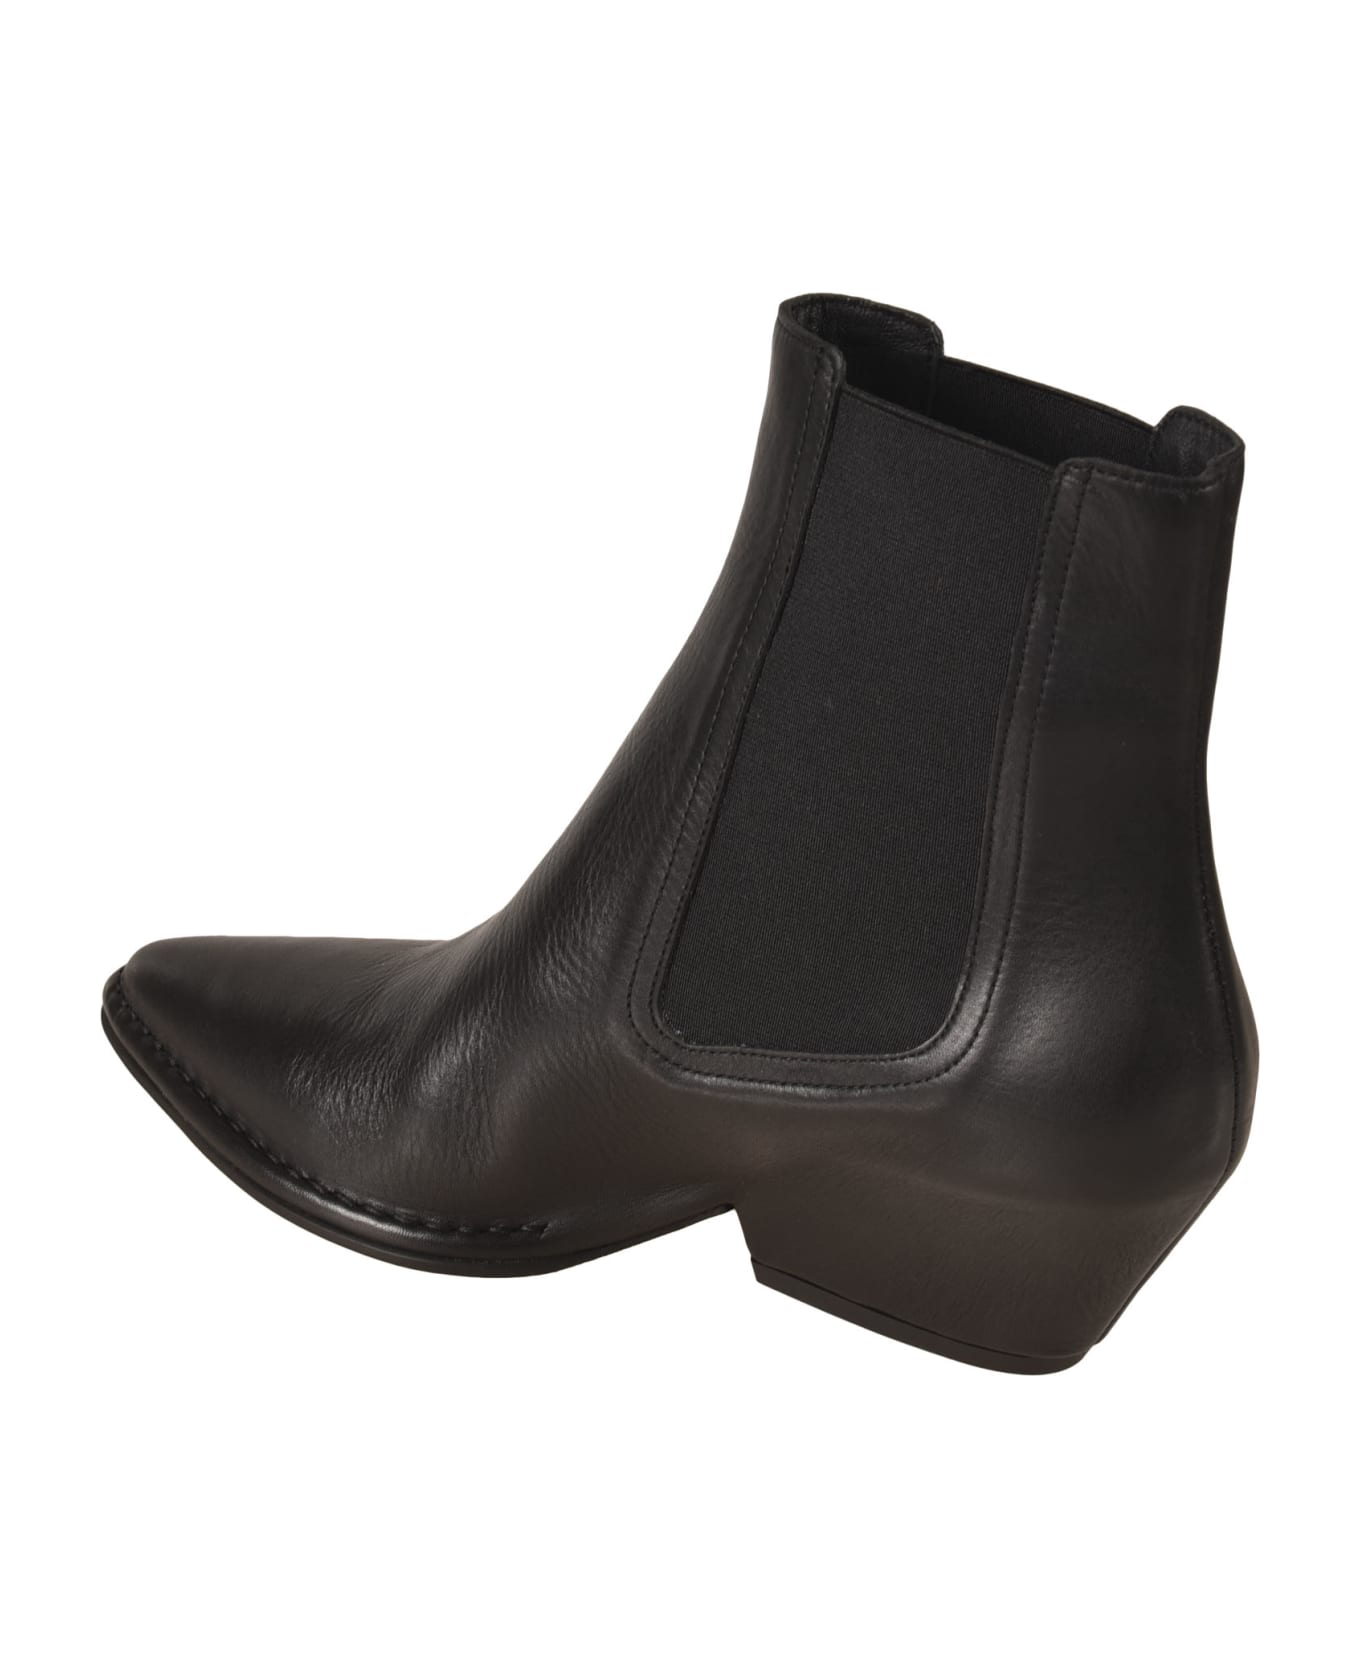 Del Carlo Crio Kobe Ankle Boots - Black